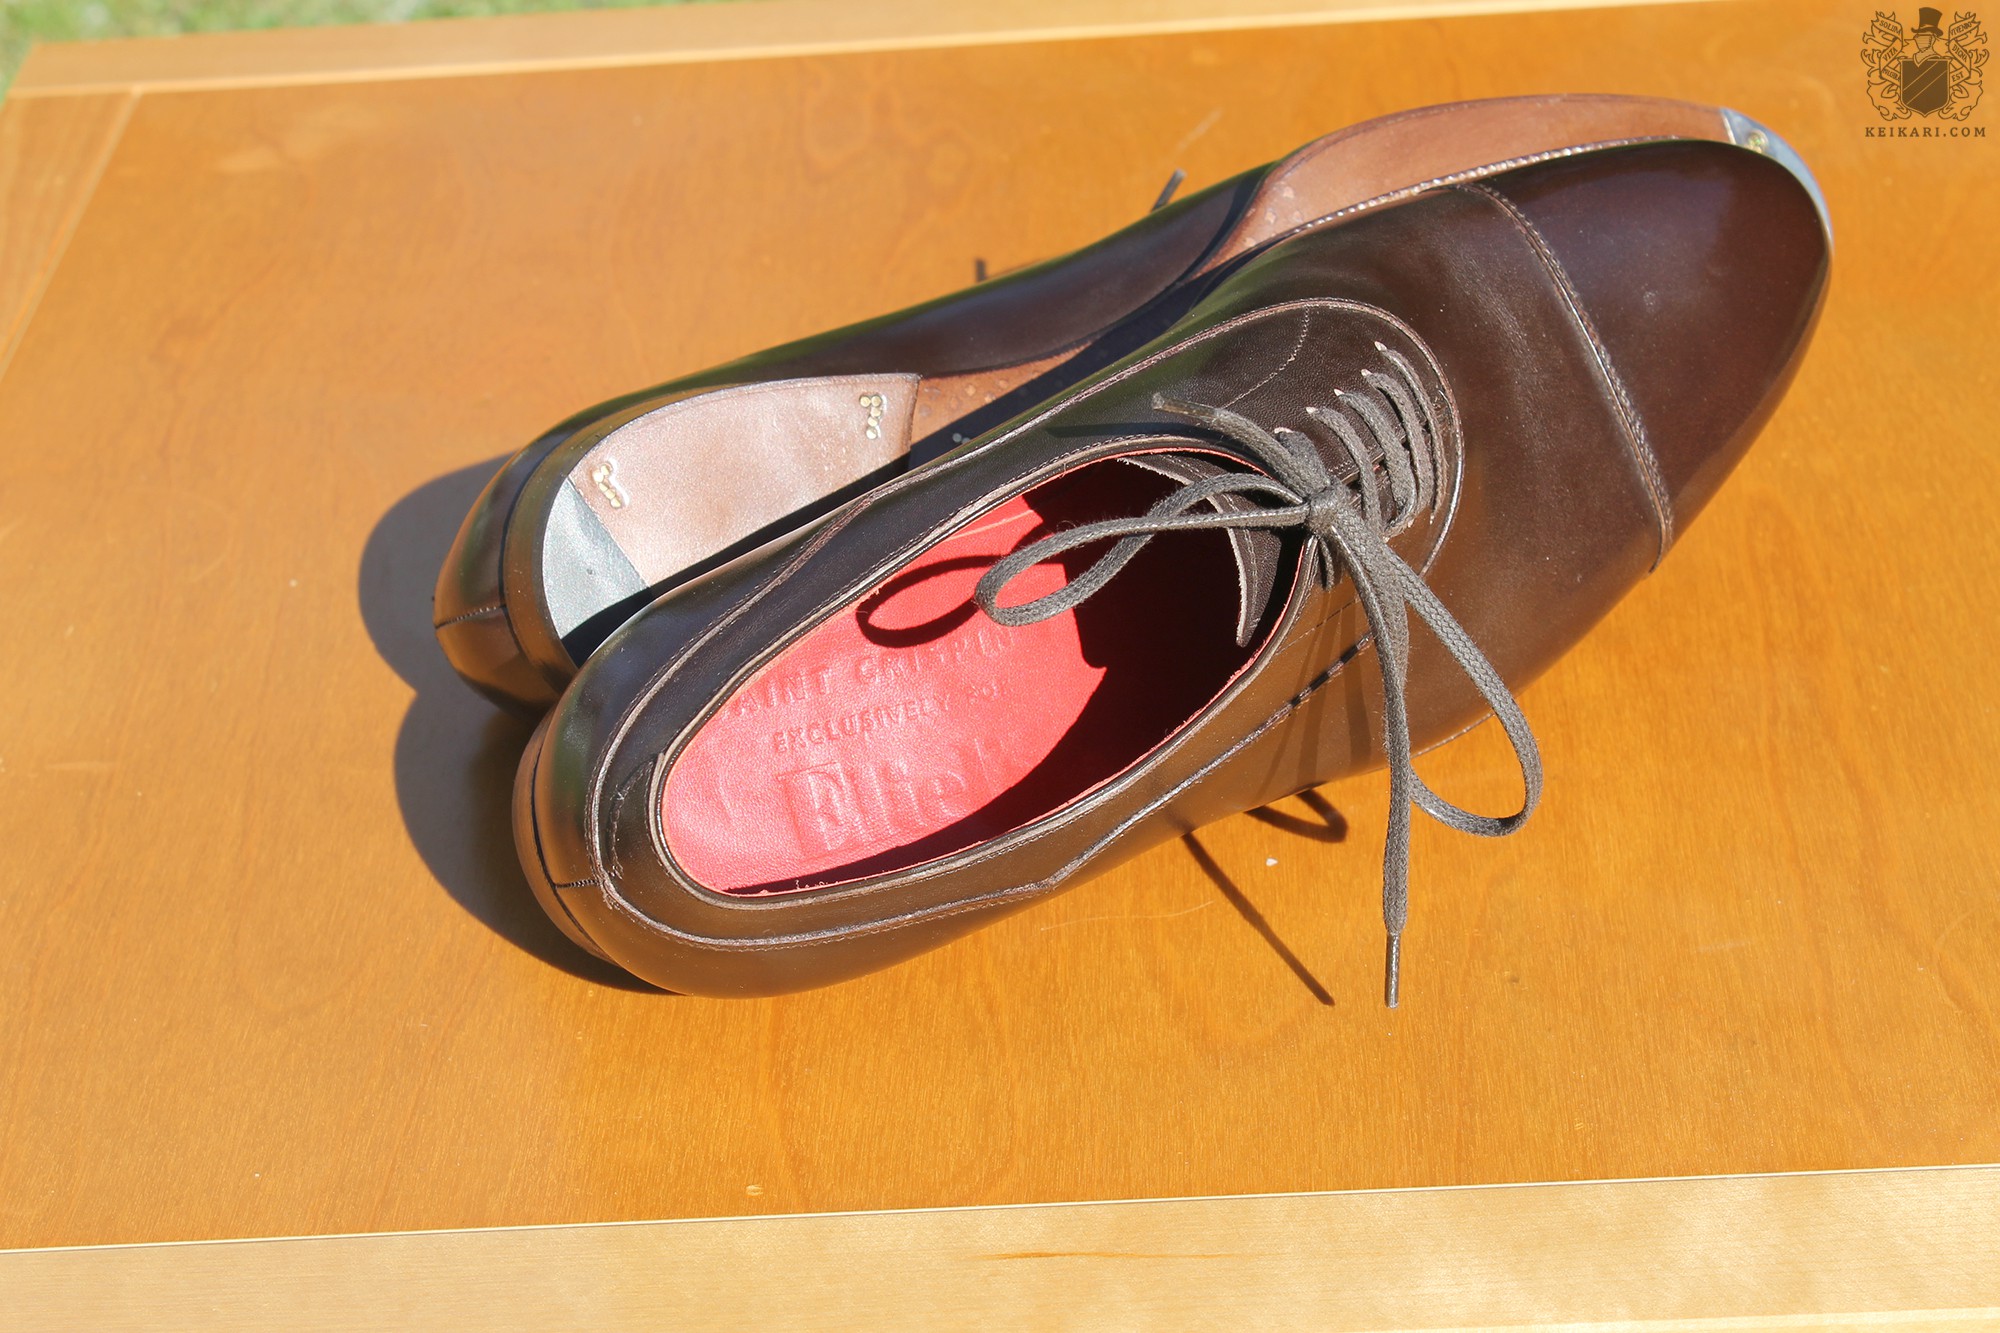 Anatomy_of_Saint_Crispin's_shoes_at_Keikari_dot_com13